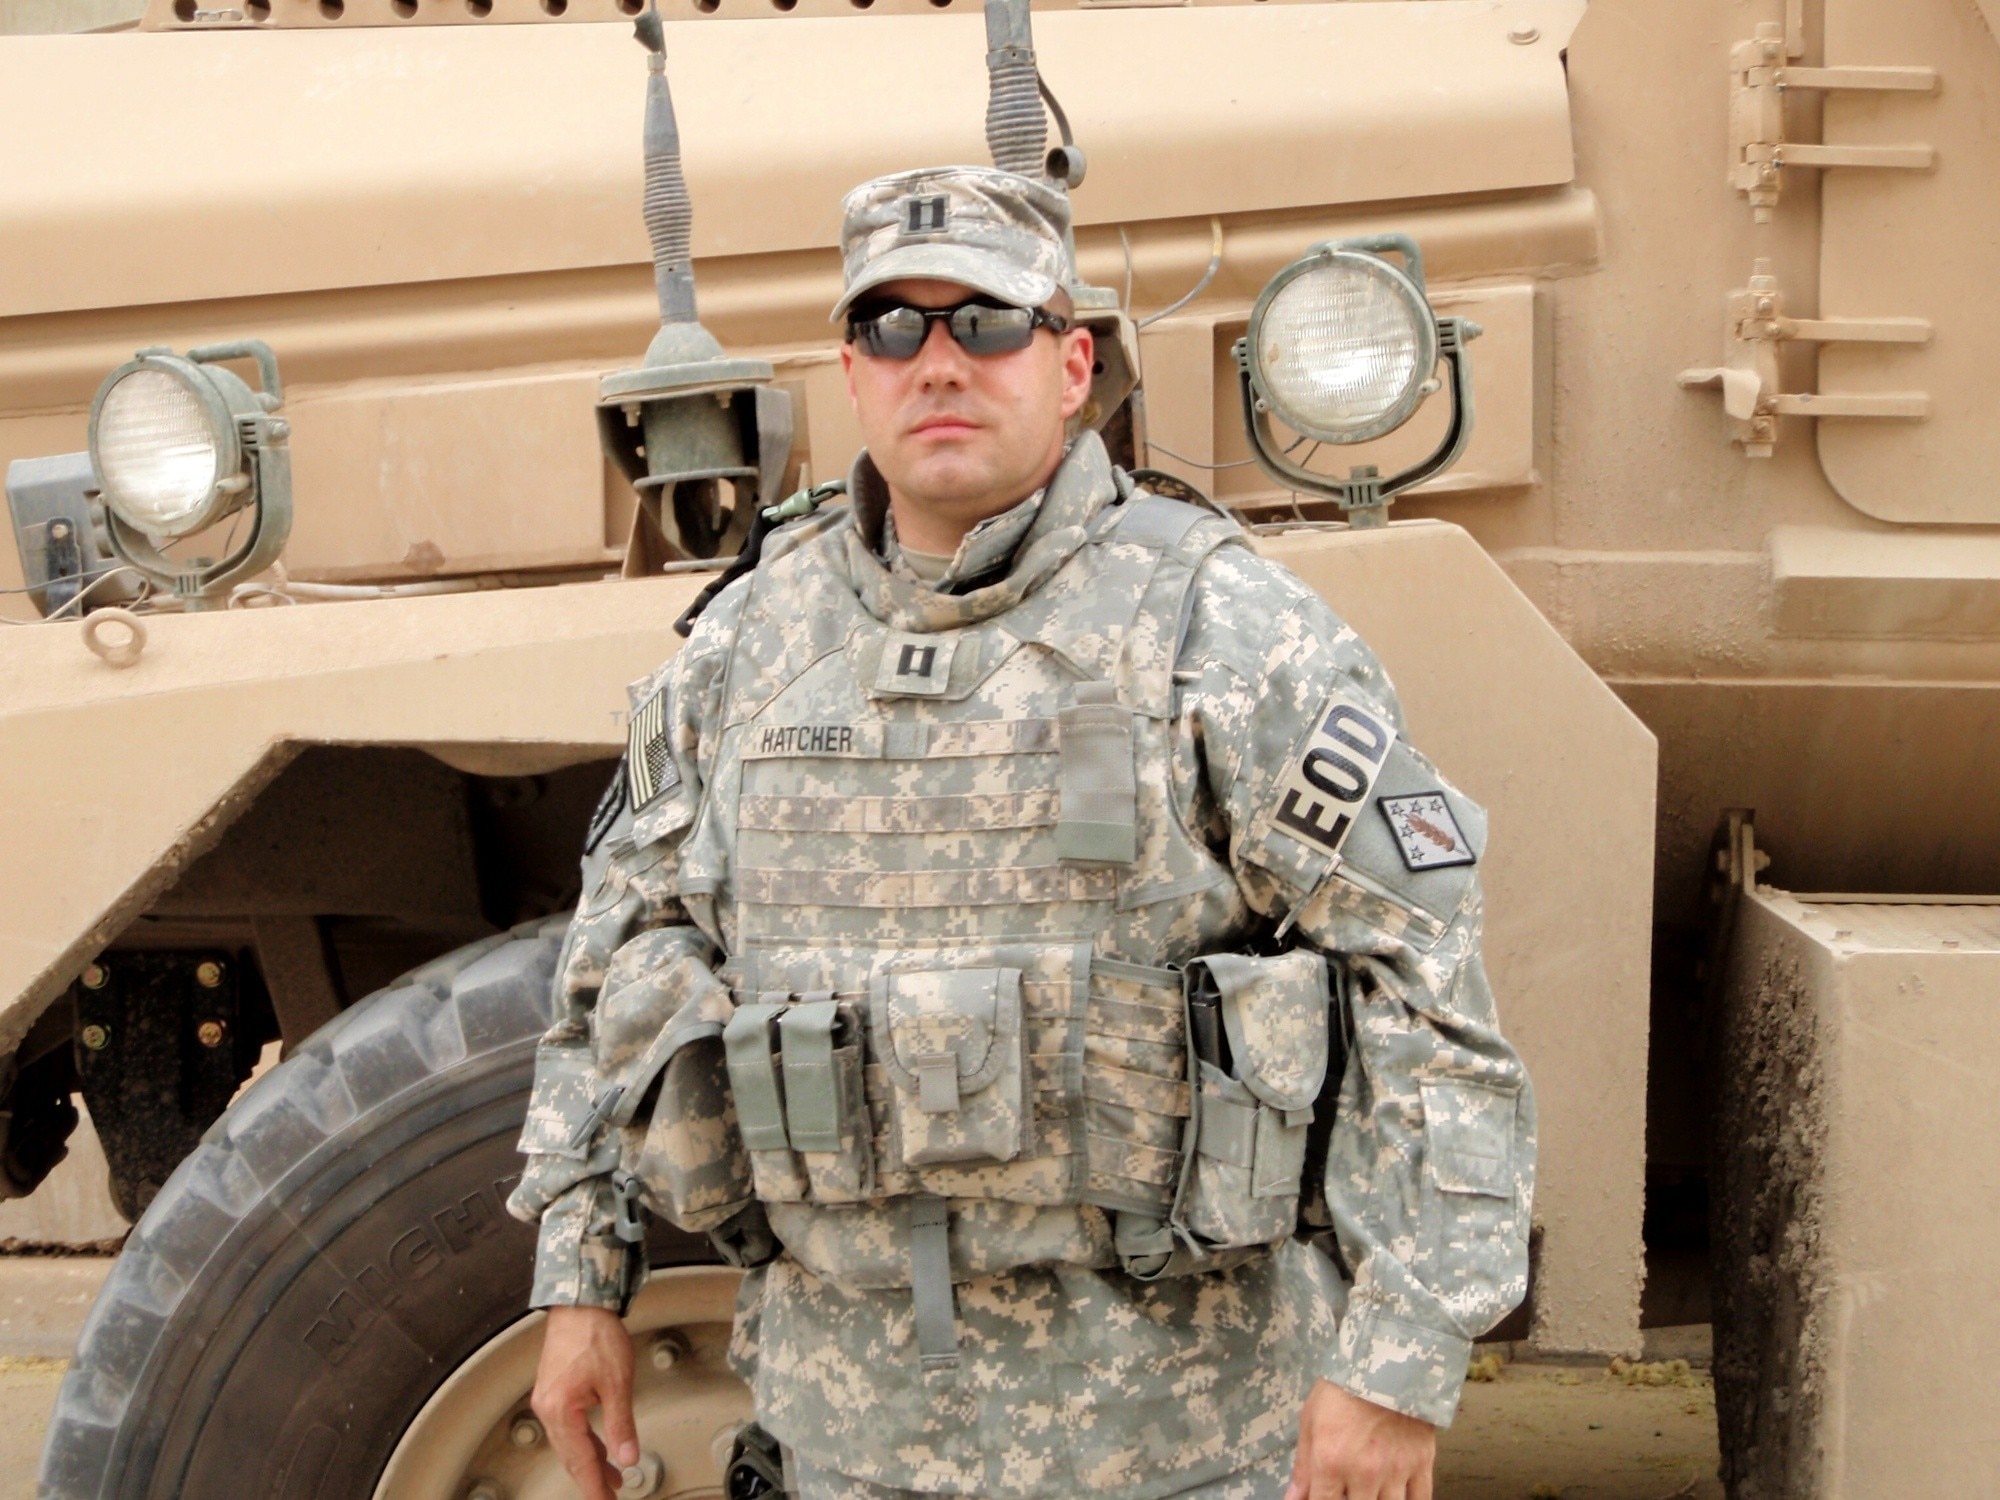 Then U.S. Army Capt. Dorian C. Hatcher serves in Iraq in 2008